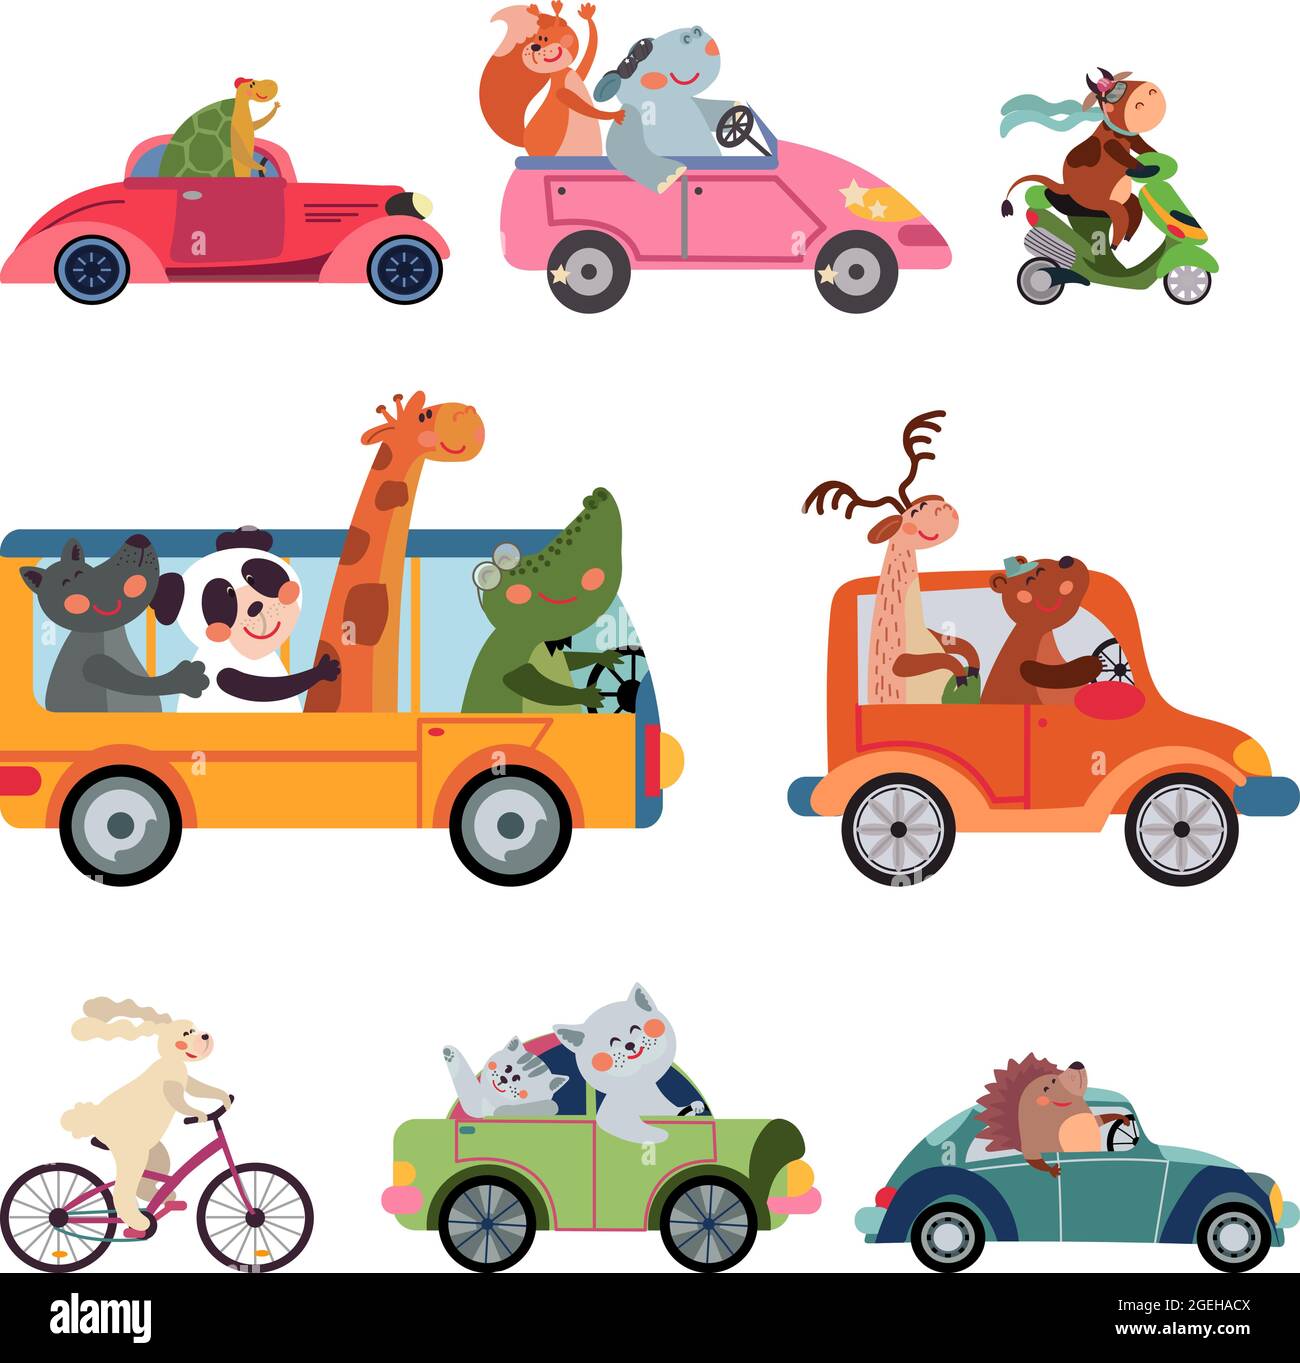 Kaufe Trägheits-Schiebespielzeugauto in Cartoon-Tierform mit